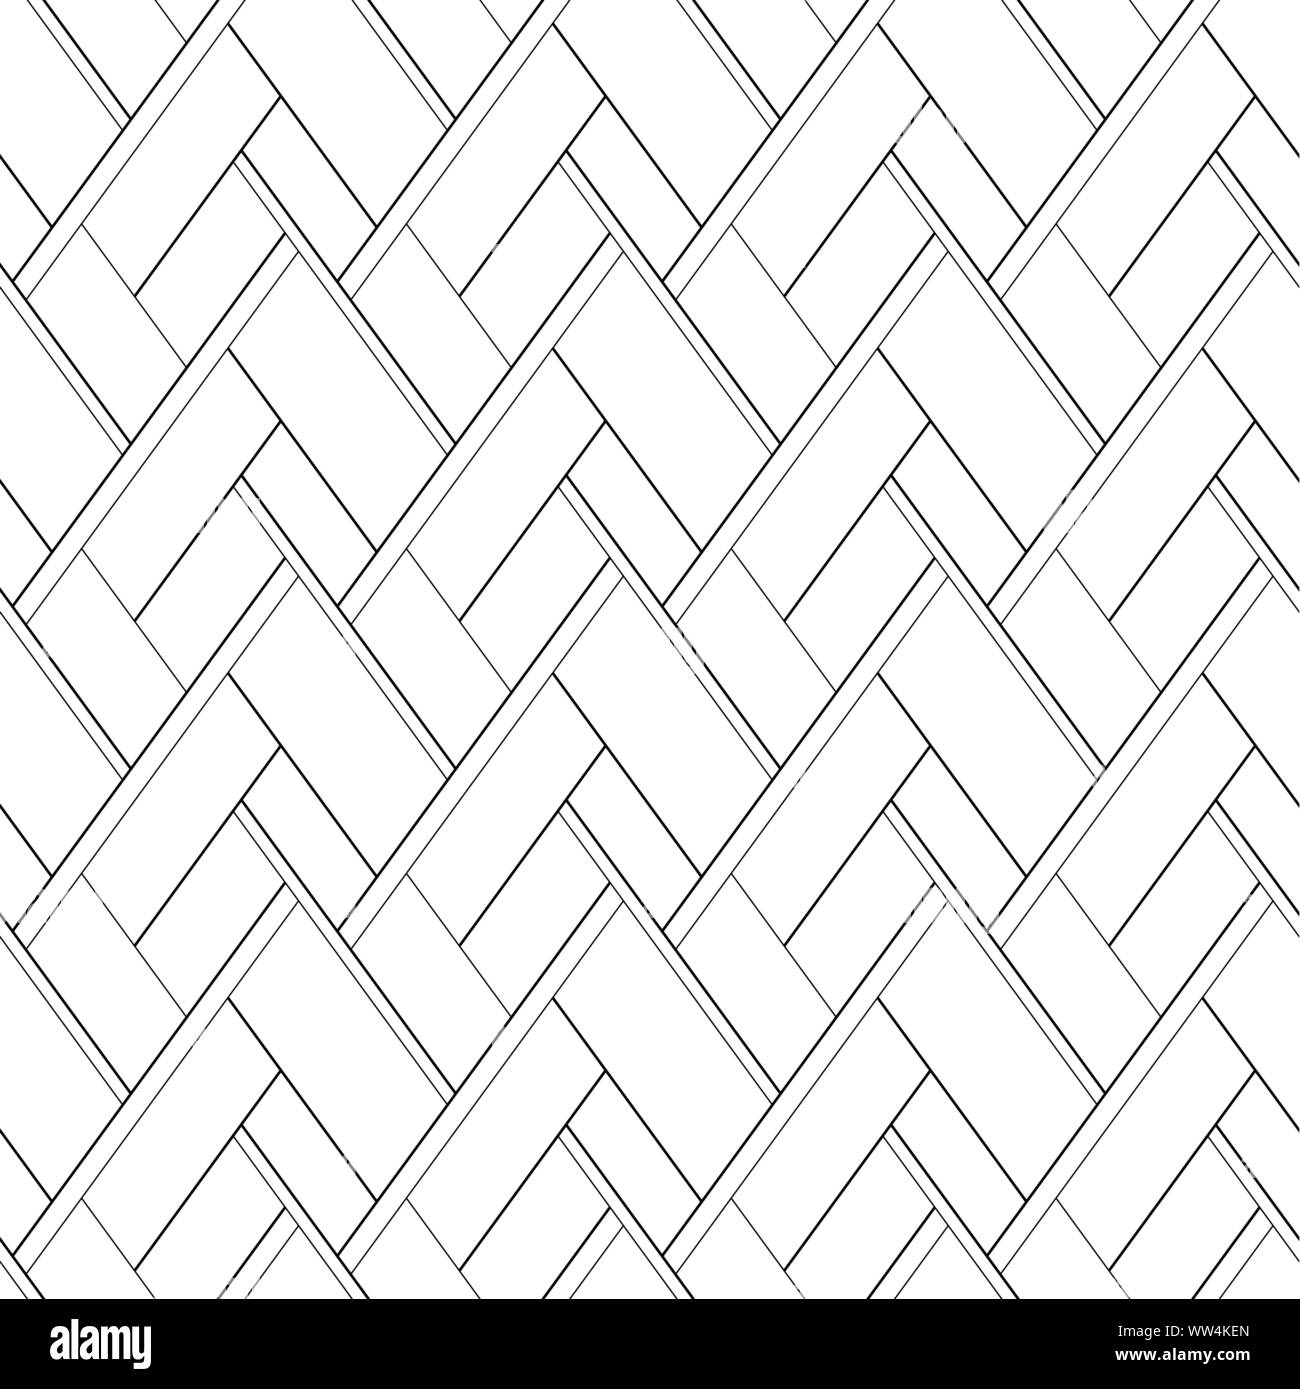 Vektor nahtlose Muster. Zusammenfassung Hintergrund mit schwarzem Kreuz Linien auf weißem Hintergrund Stock Vektor